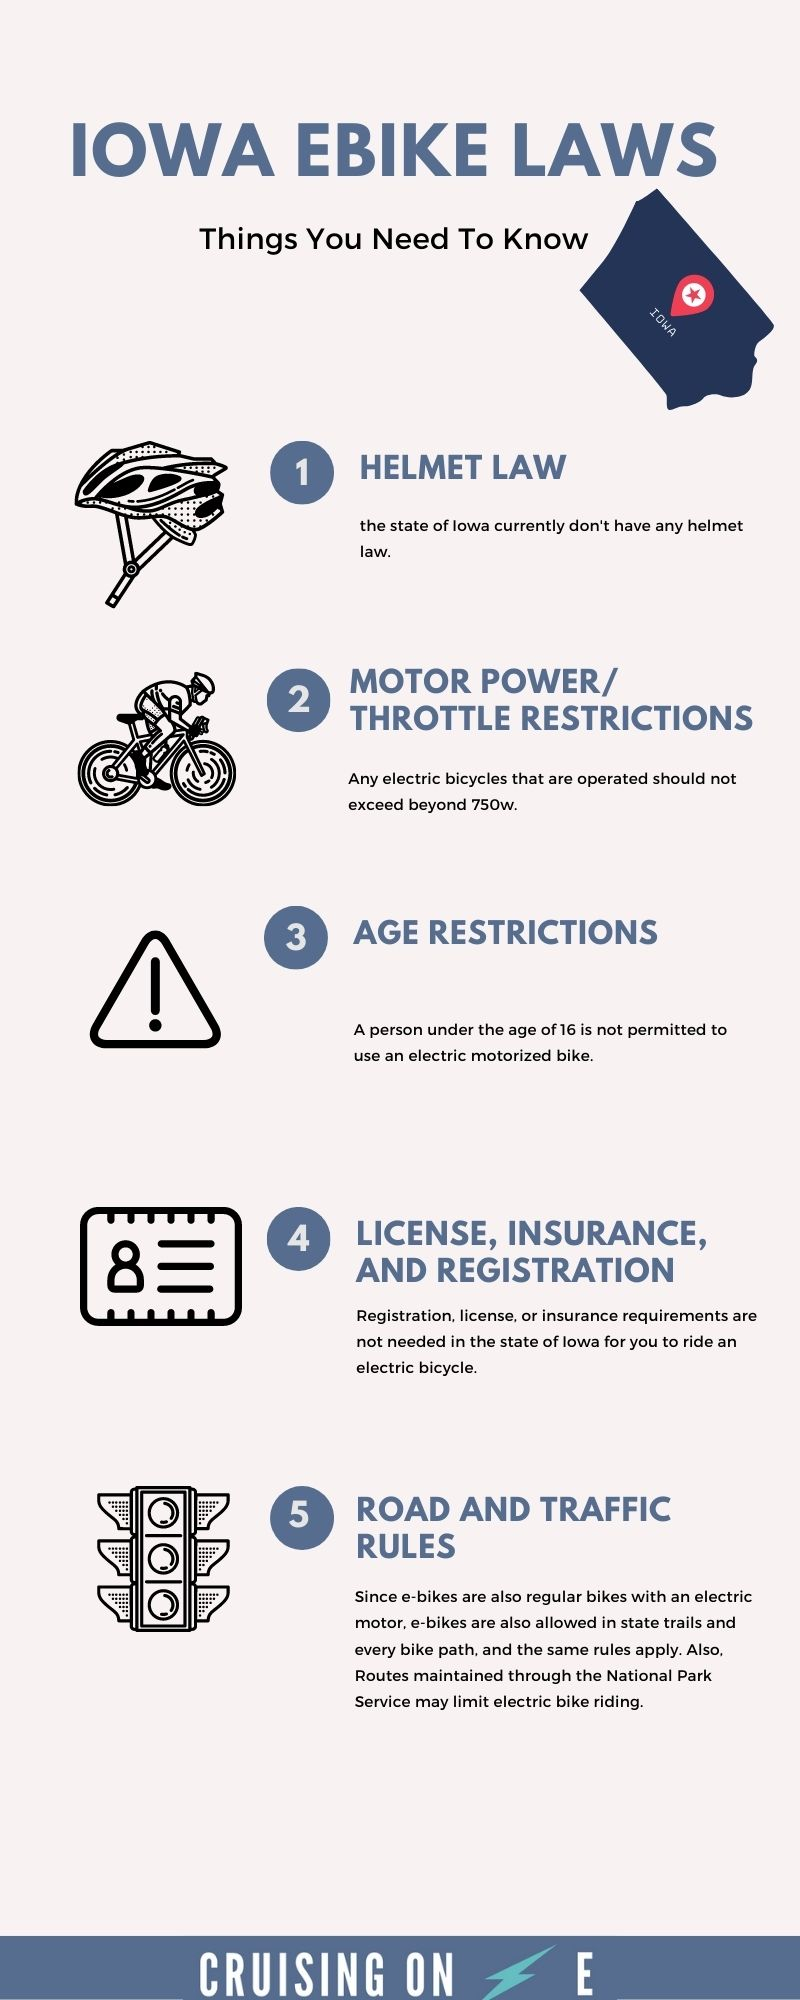 Iowa Ebike Laws Infographic